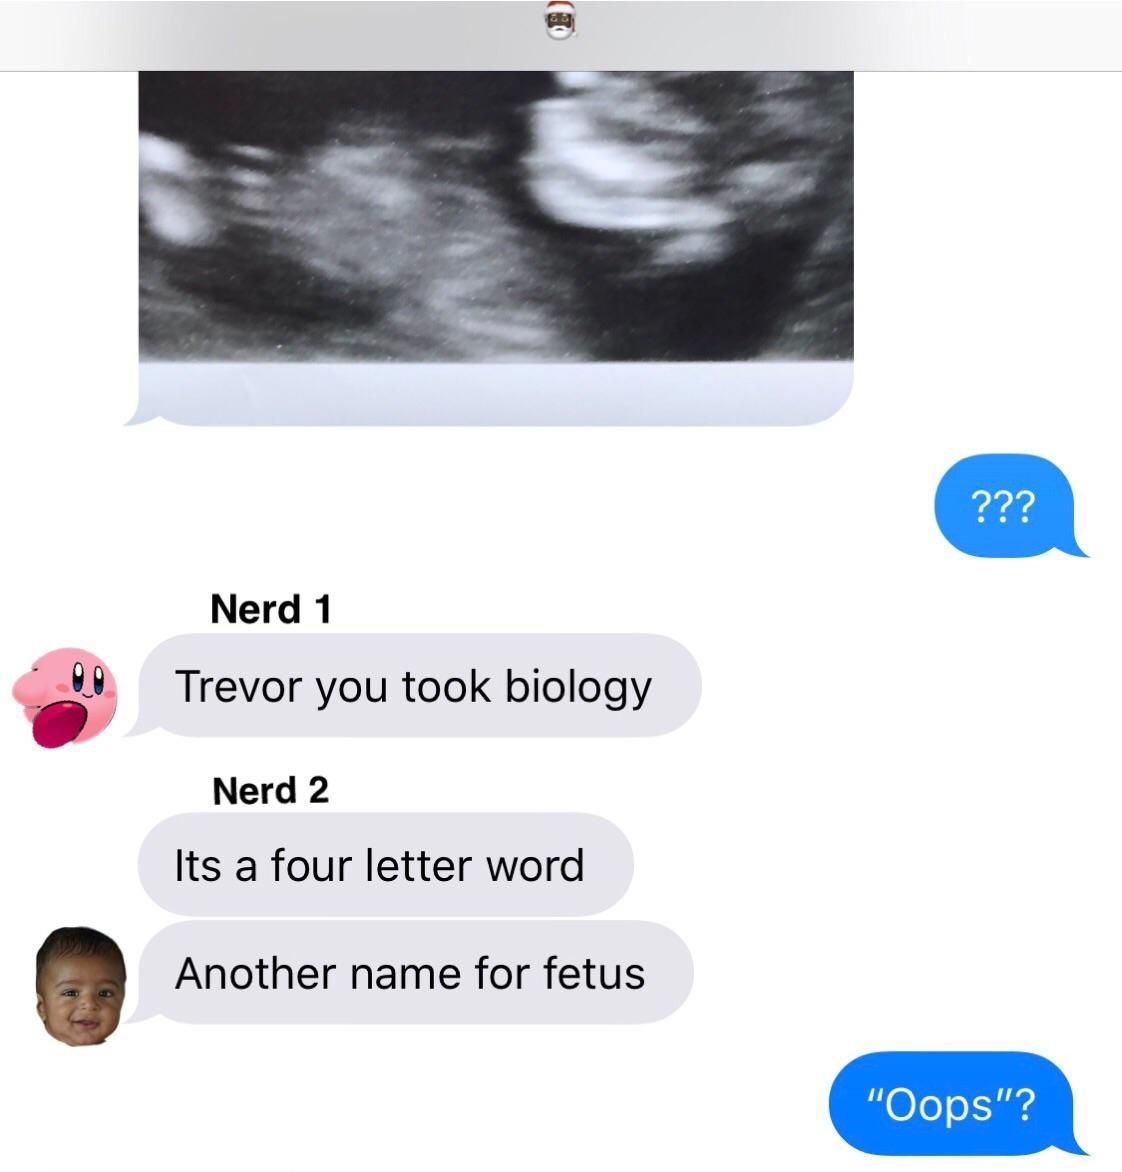 fetus deletus